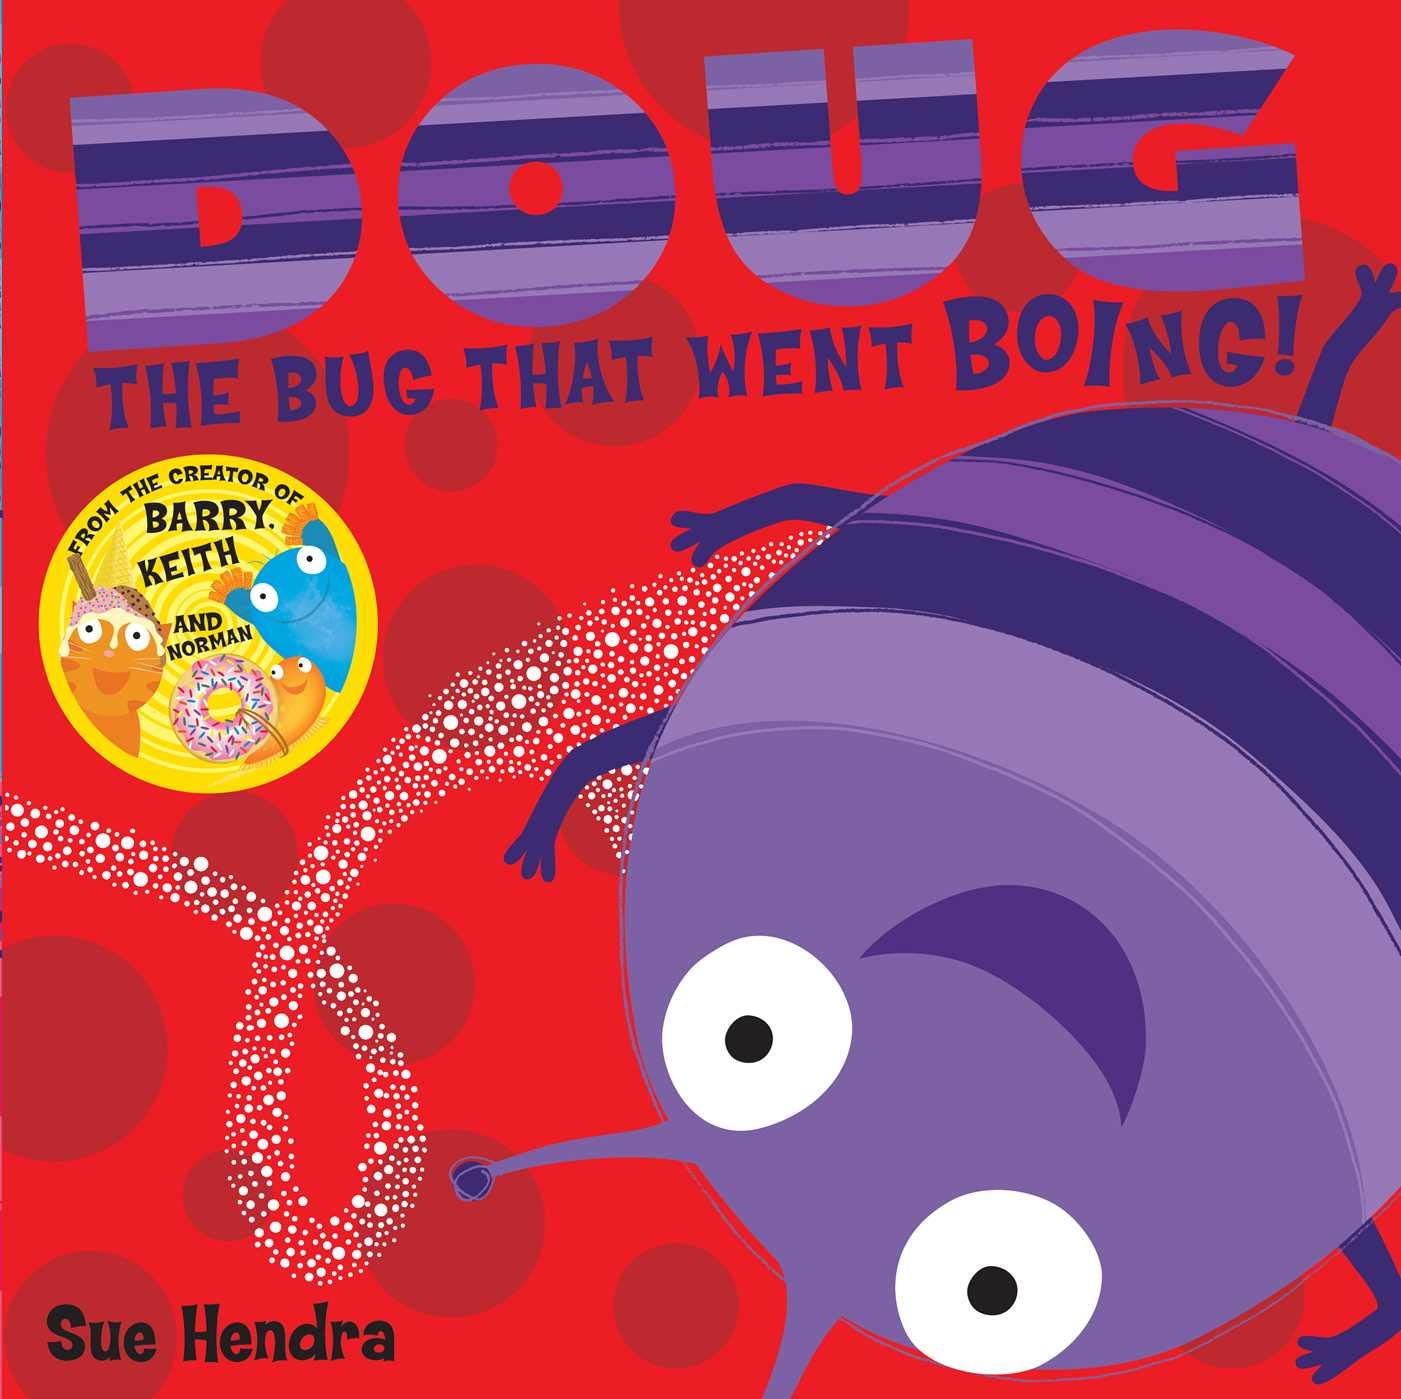 Doug the Bug